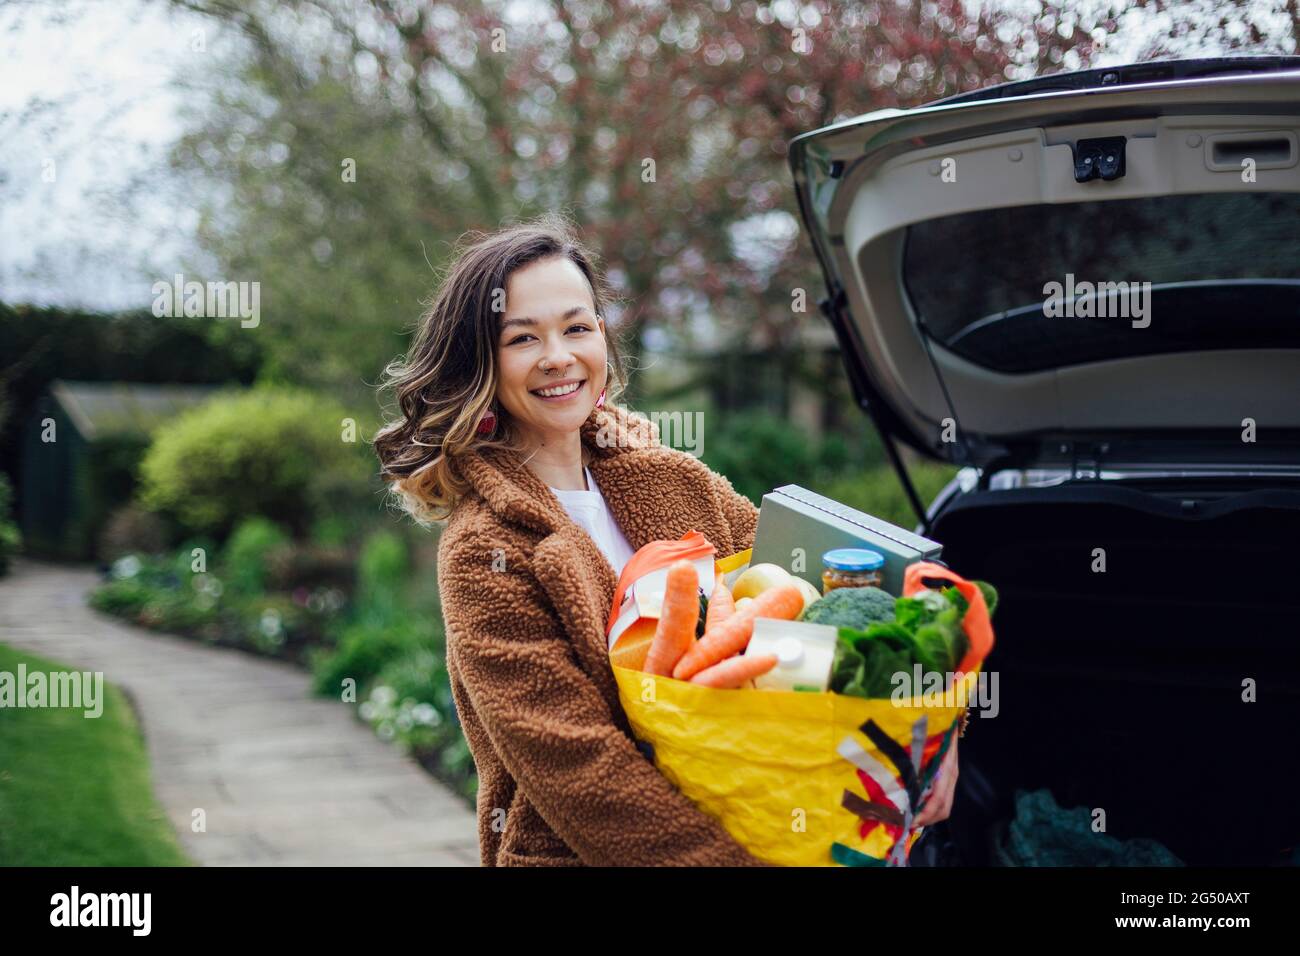 Une jeune femme souriant, regardant l'appareil photo et tenant un sac de transport réutilisable rempli de provisions. Elle déchargeant la voiture après avoir fait des achats de nourriture. Banque D'Images